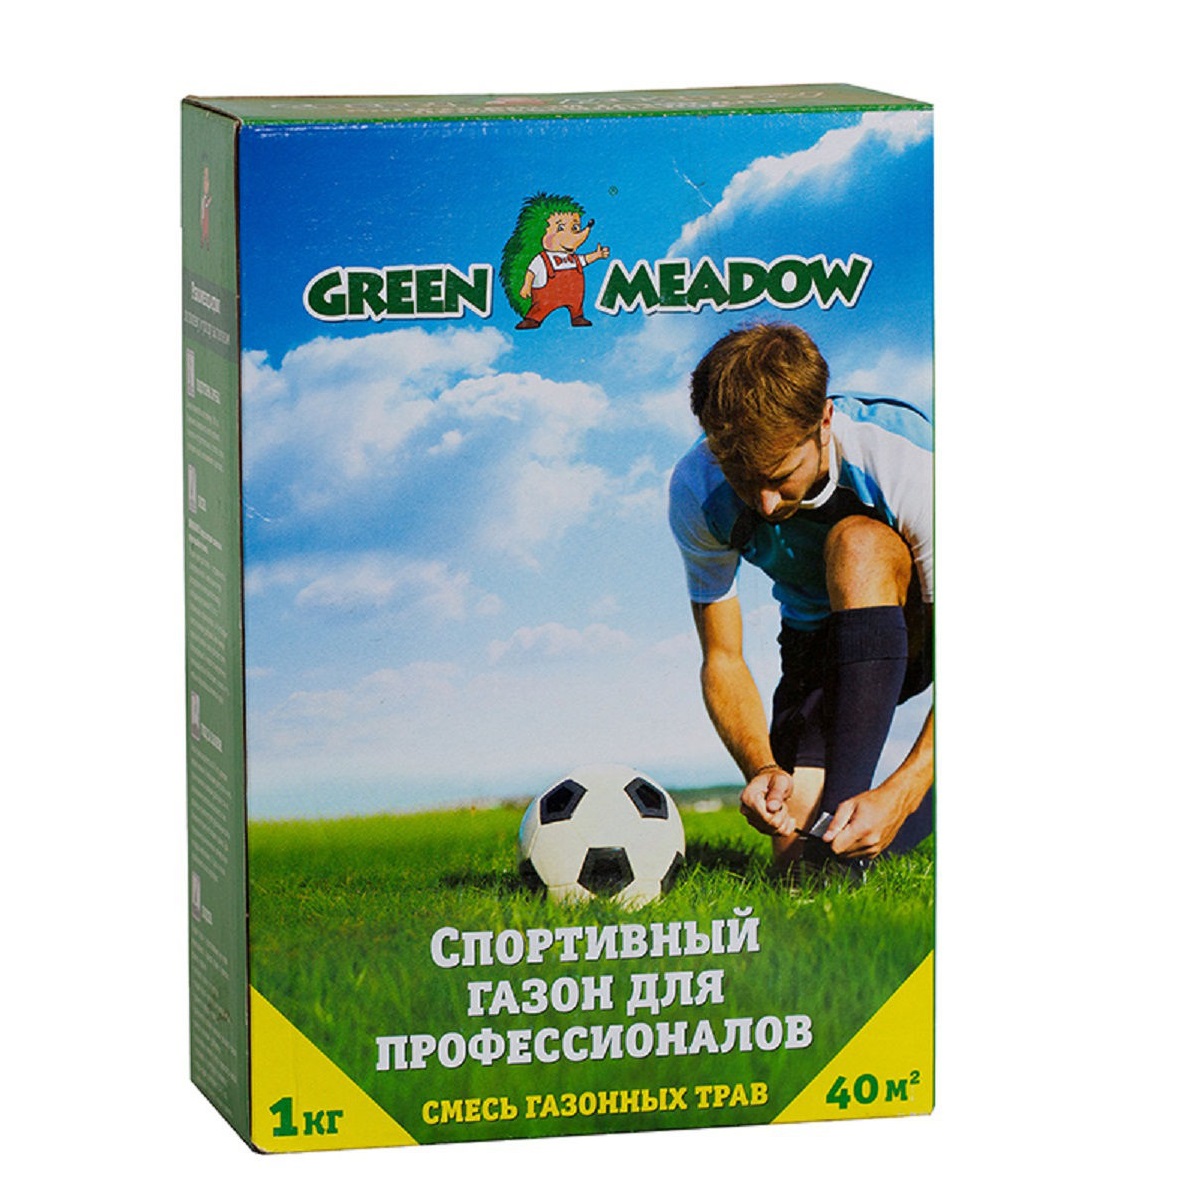 Газон Green Meadow спорт для профессионалов 1 кг